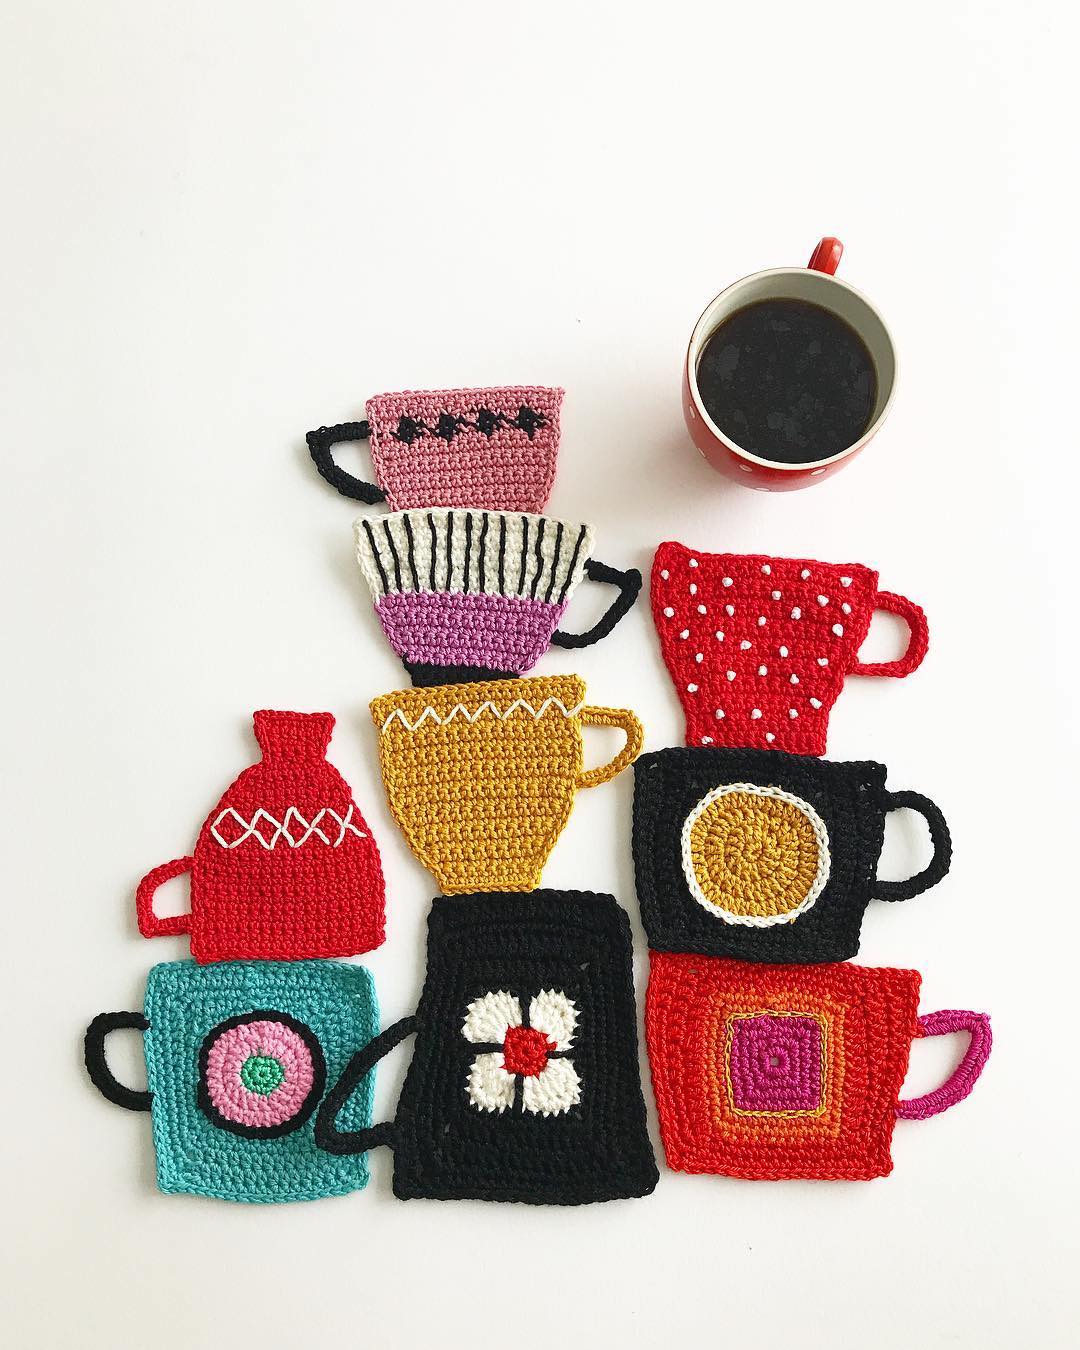 Crochet art by Tuija Heikkinen